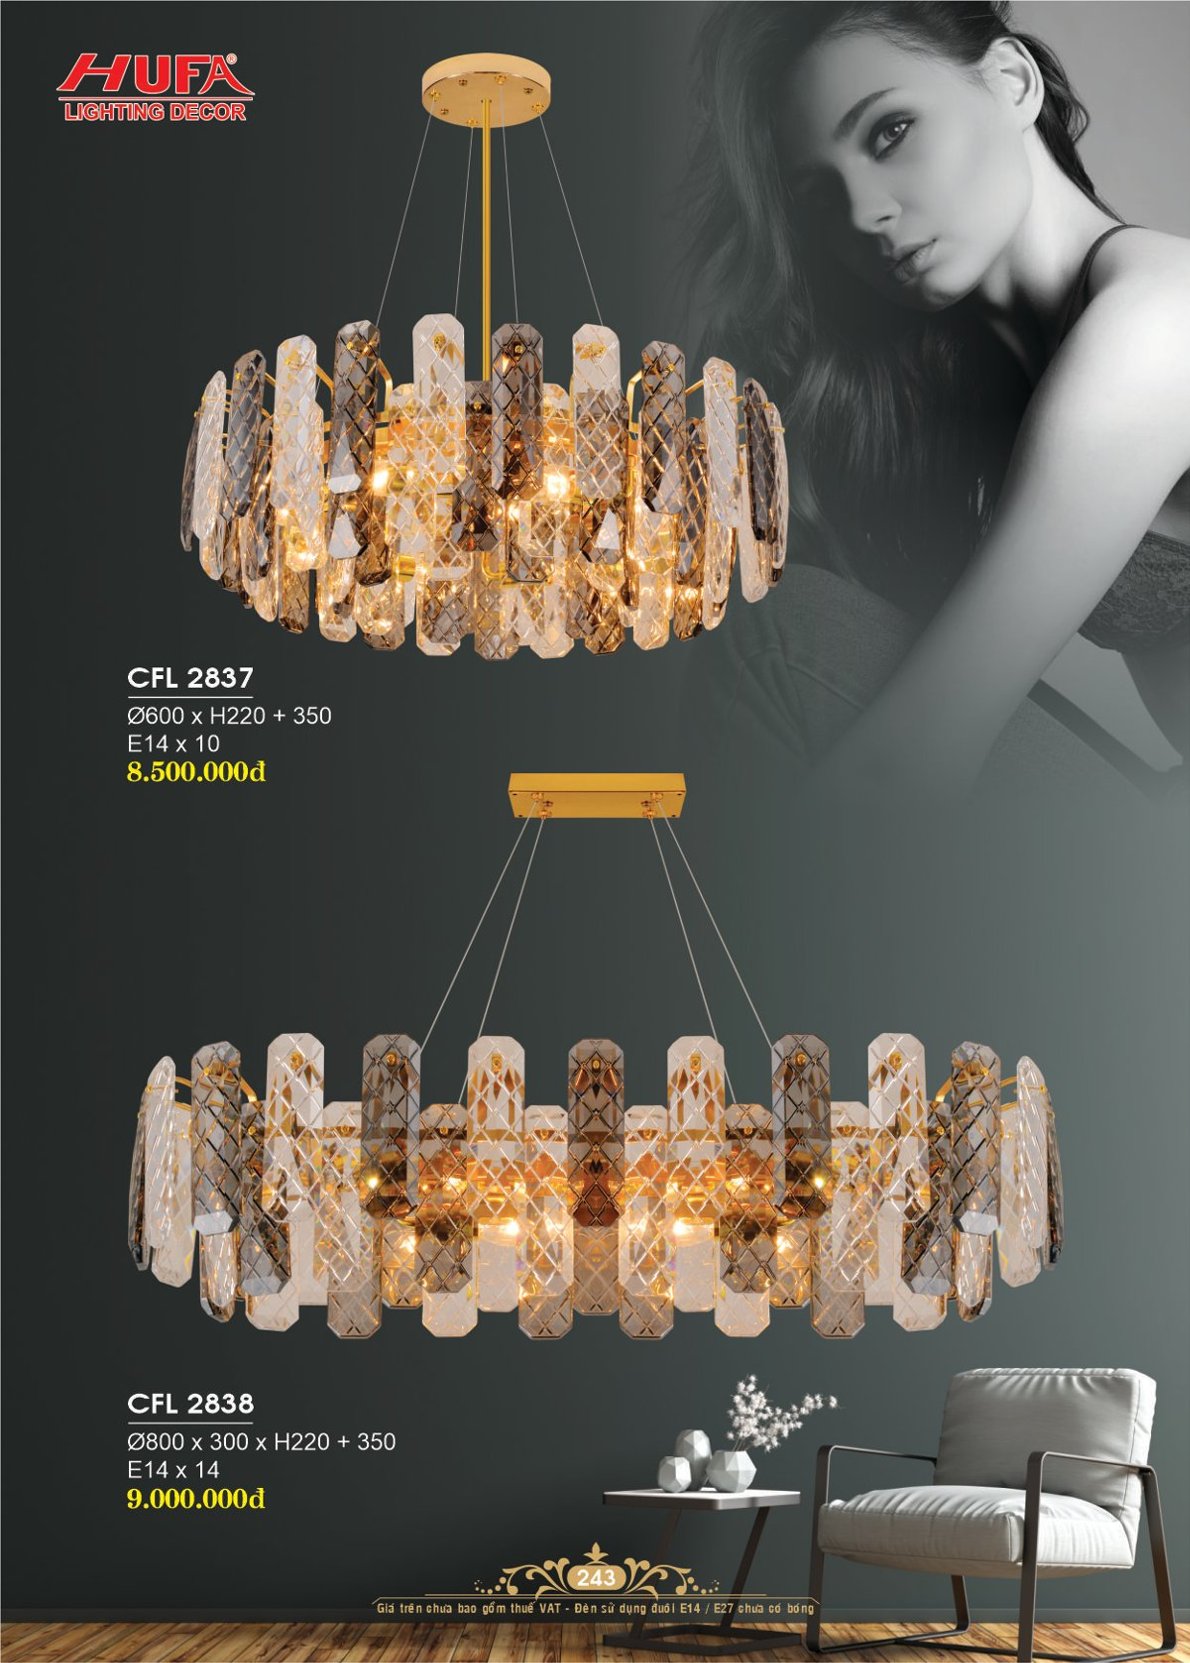 Đèn chùm pha lê, đèn trang trí Hufa CFL 2513/630 cao cấp giá rẻ bảo hành lâu dài, hỗ trợ lắp đặt, giao hàng toàn quốc. Đèn pha lê Hufa được bảo trì trọn đời